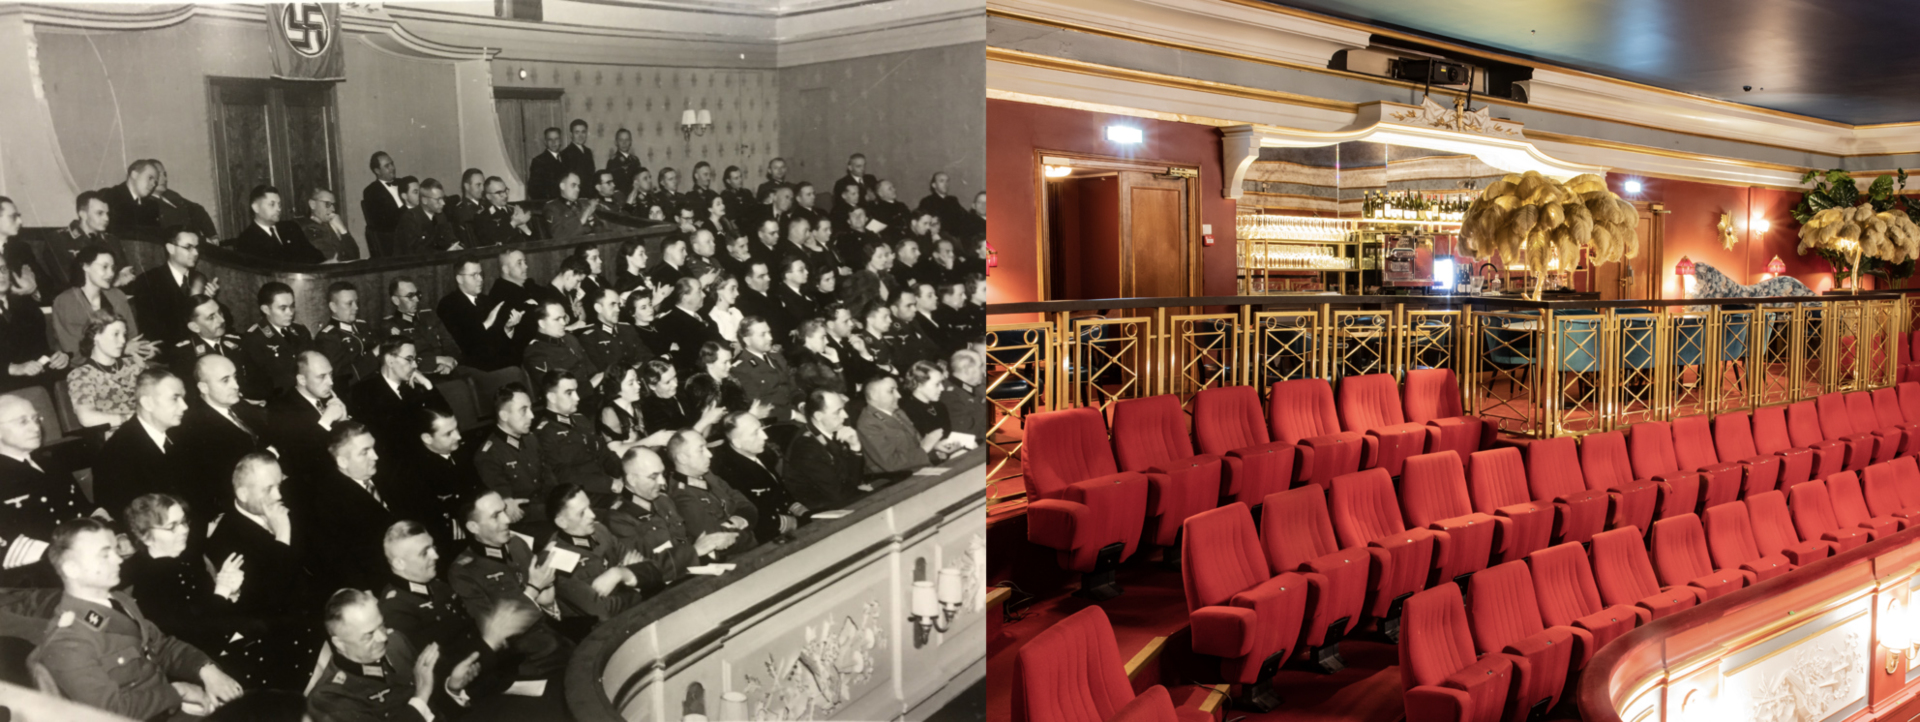 Terbovens losje anno 1941 og 2020: T.v.: Rikskommisær Terboven med følge i operaen i Stortingsgata 16. T.h.: Deler av Terbovens losje er omgjort til bar i det som nå er Hotel Christiania Teater.